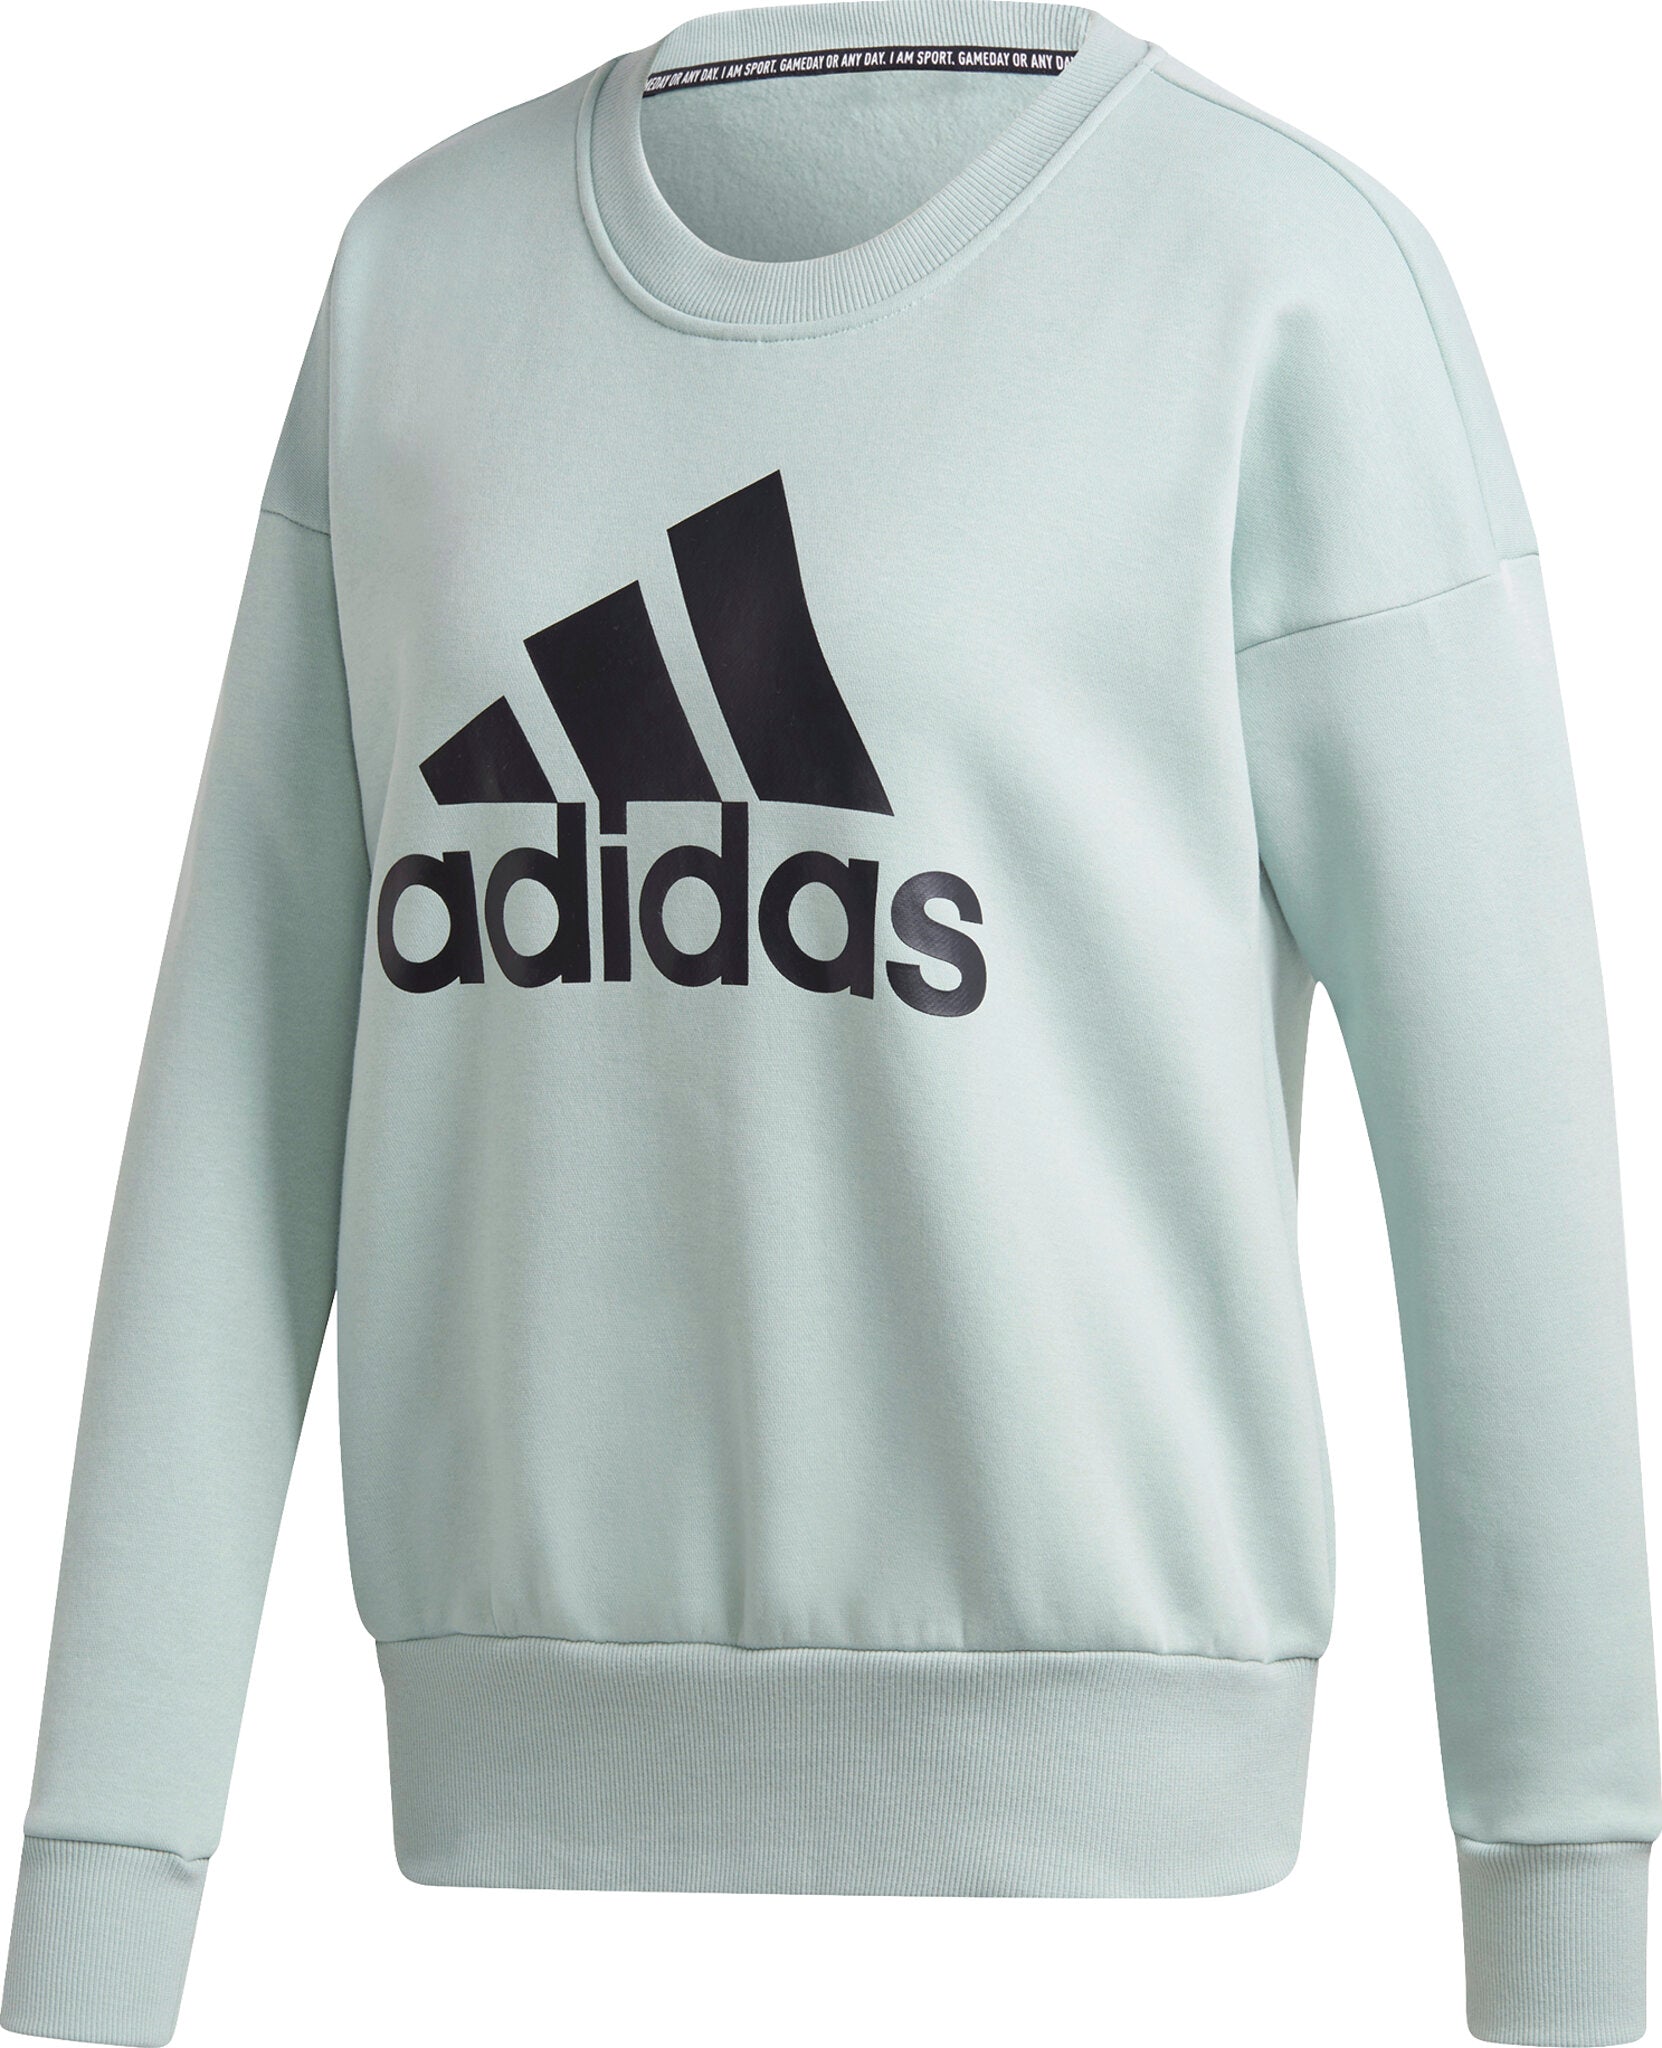 Adidas Essentials Badge of Sport Crew Long Sleeve Sweatshirt - Women's ...